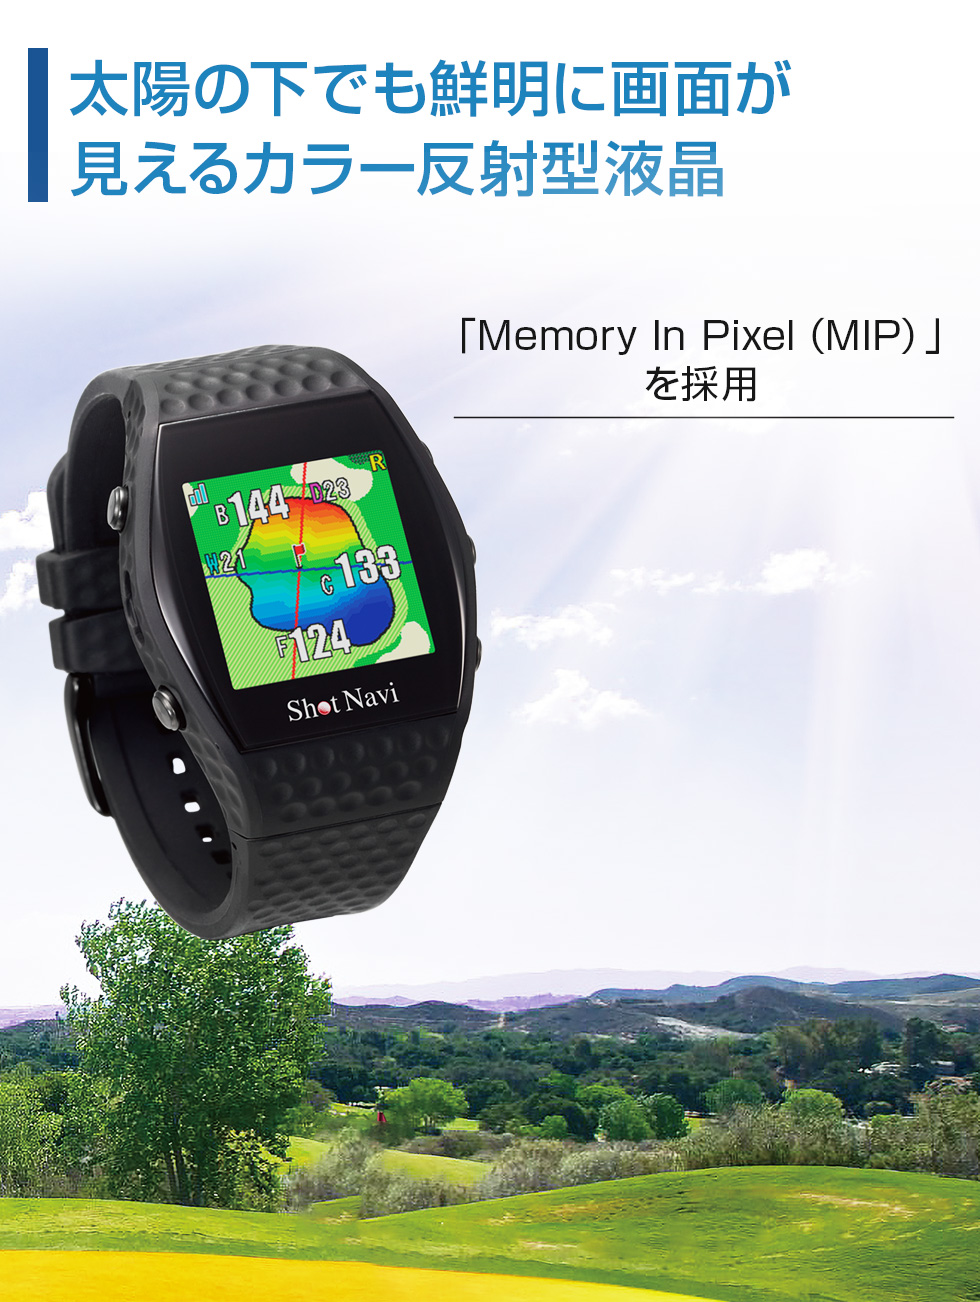 ショットナビ 腕時計型 GPS ゴルフ ナビ Shot Navi INFINITY インフィニティ ブラック 有賀園 ゴルフ